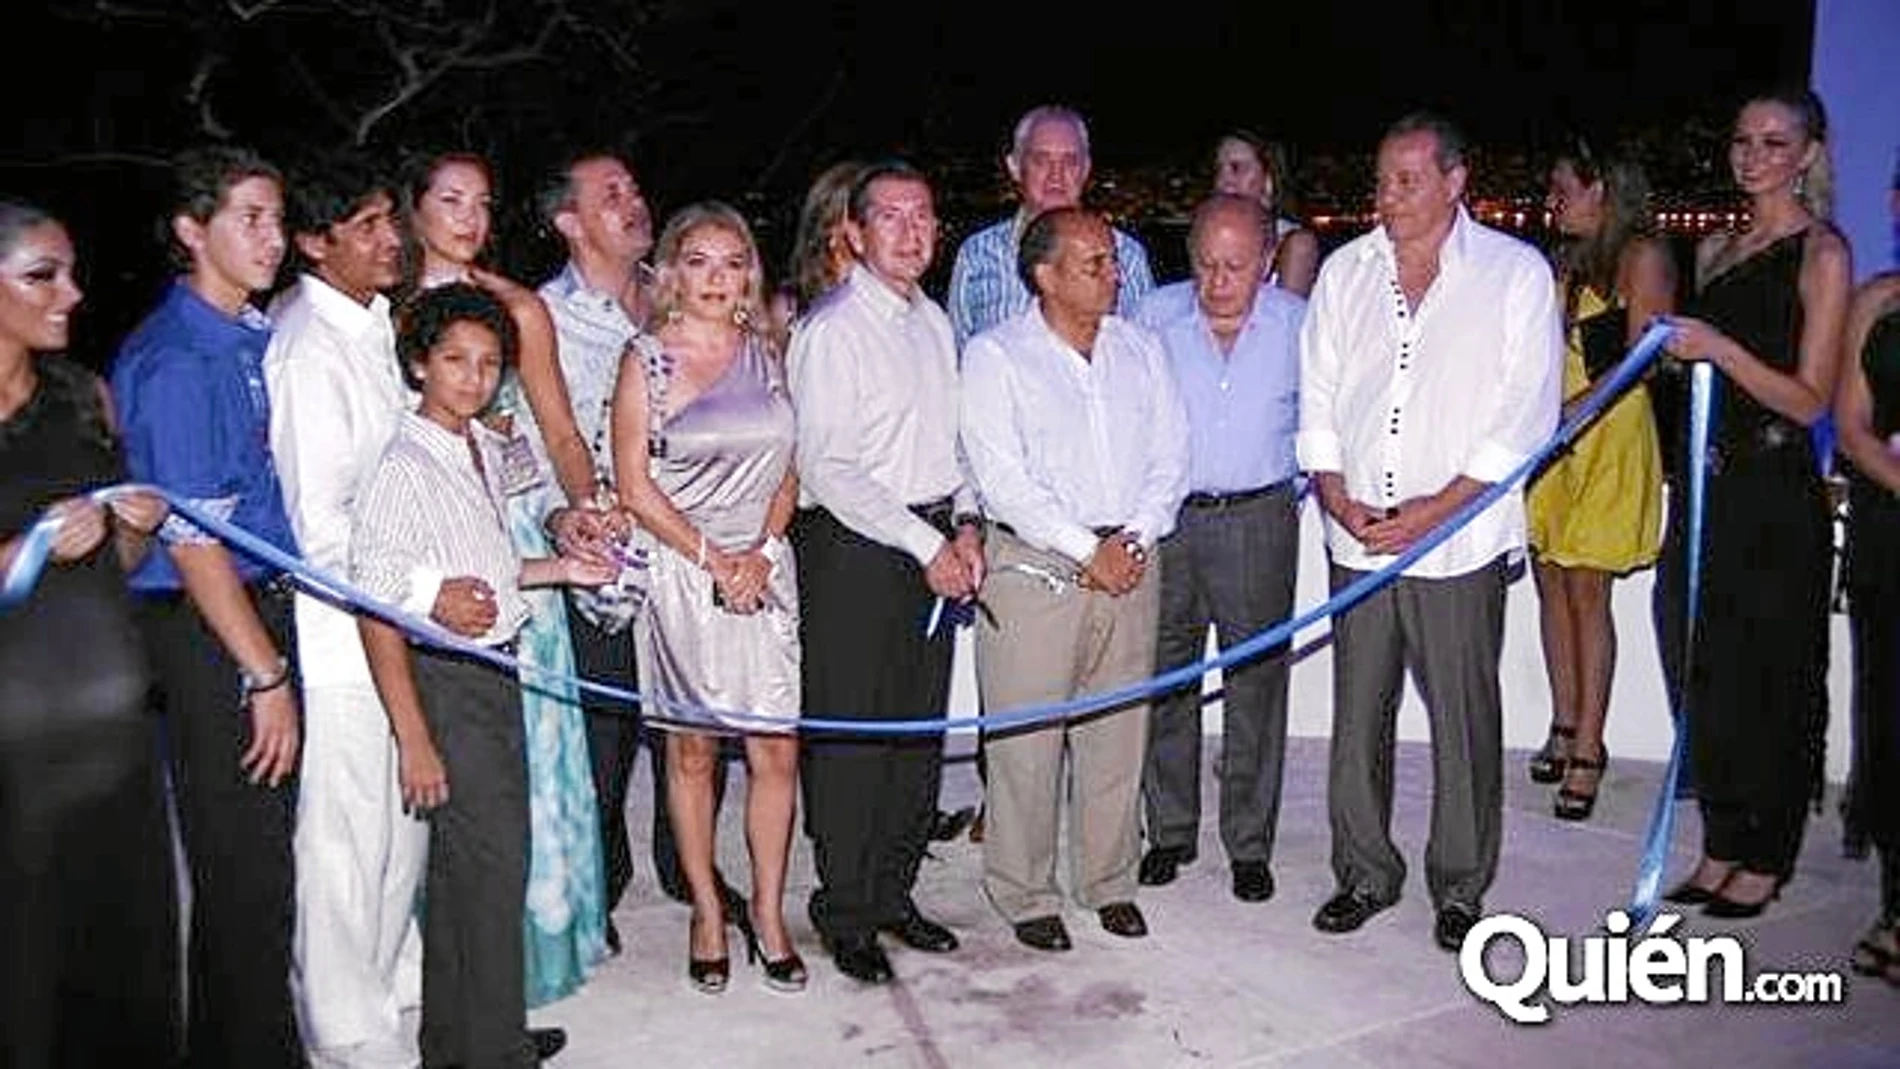 El ex «molt honorable», en la fiesta de inauguración del hotel Encanto en Acapulco en 2009 junto a su hijo Jordi Jr. y uno de los socios de éste, Sergio Kam, y otras personas de su círculo más cercano